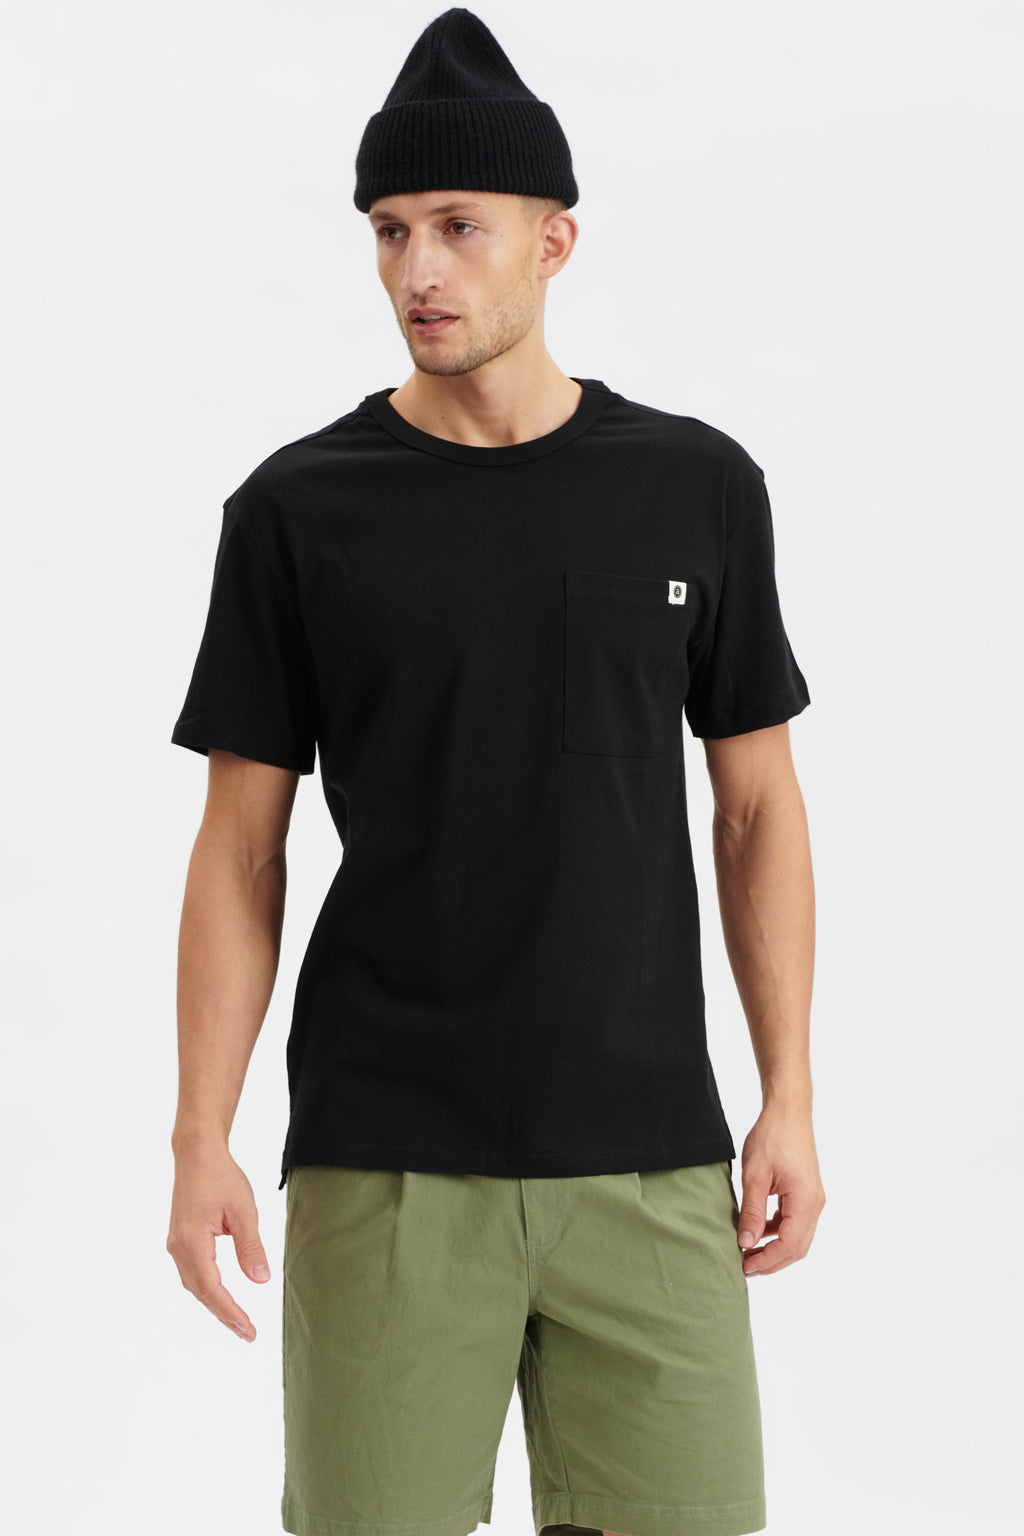 Pocket T-Shirt mit kleinem Flag Logo an der Brusttasche in der Farbe Schwarz von der Marke Anerkjendt